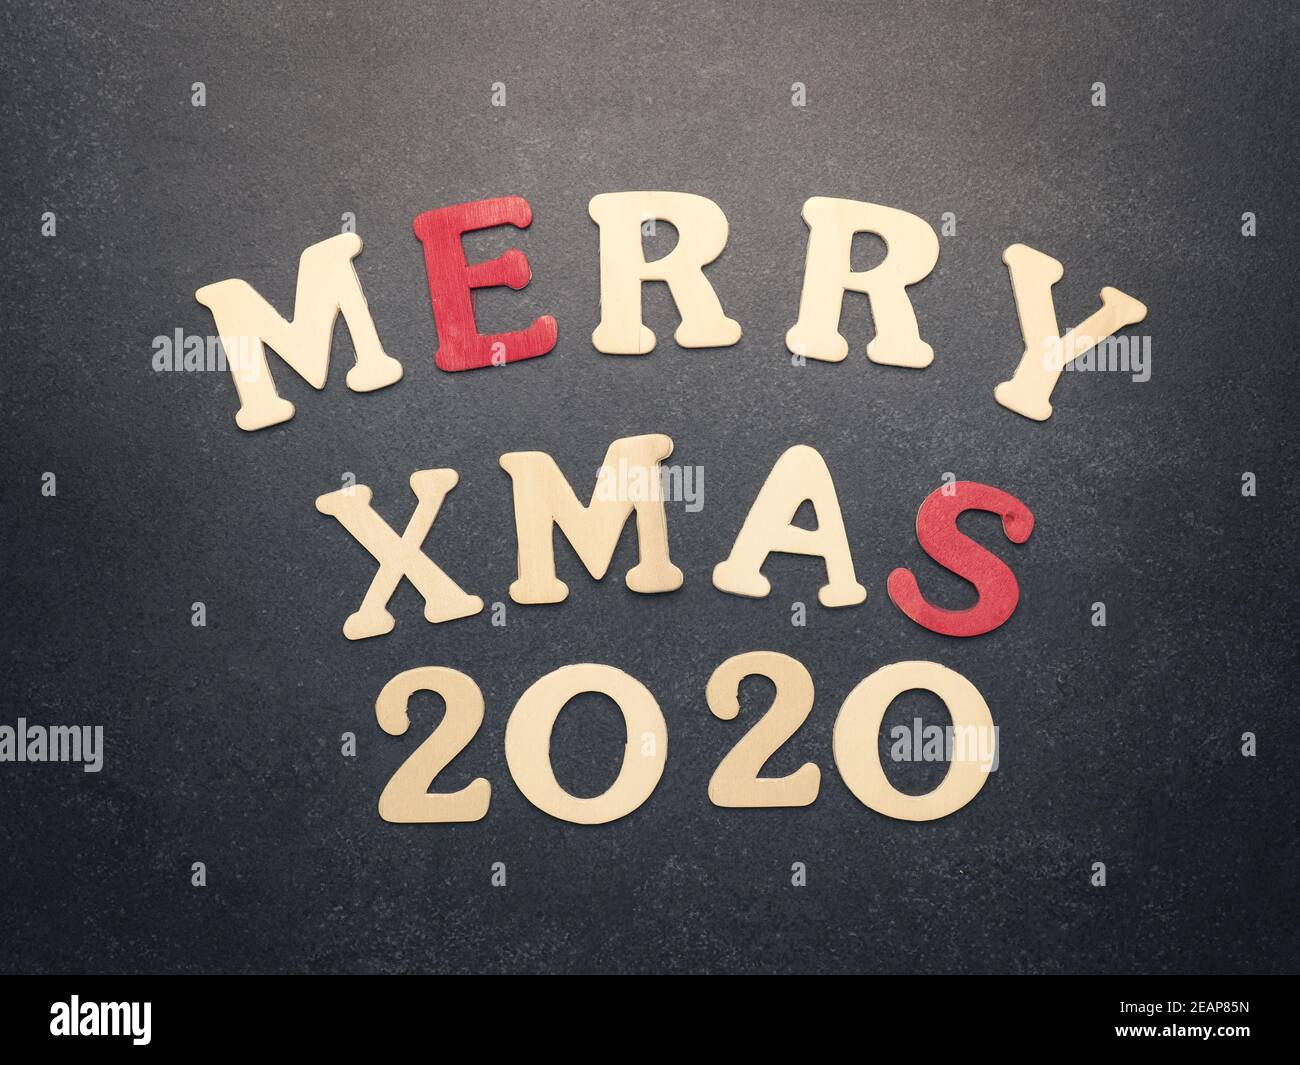 Las palabras Merry Xmas 2020 en una pizarra Foto de stock